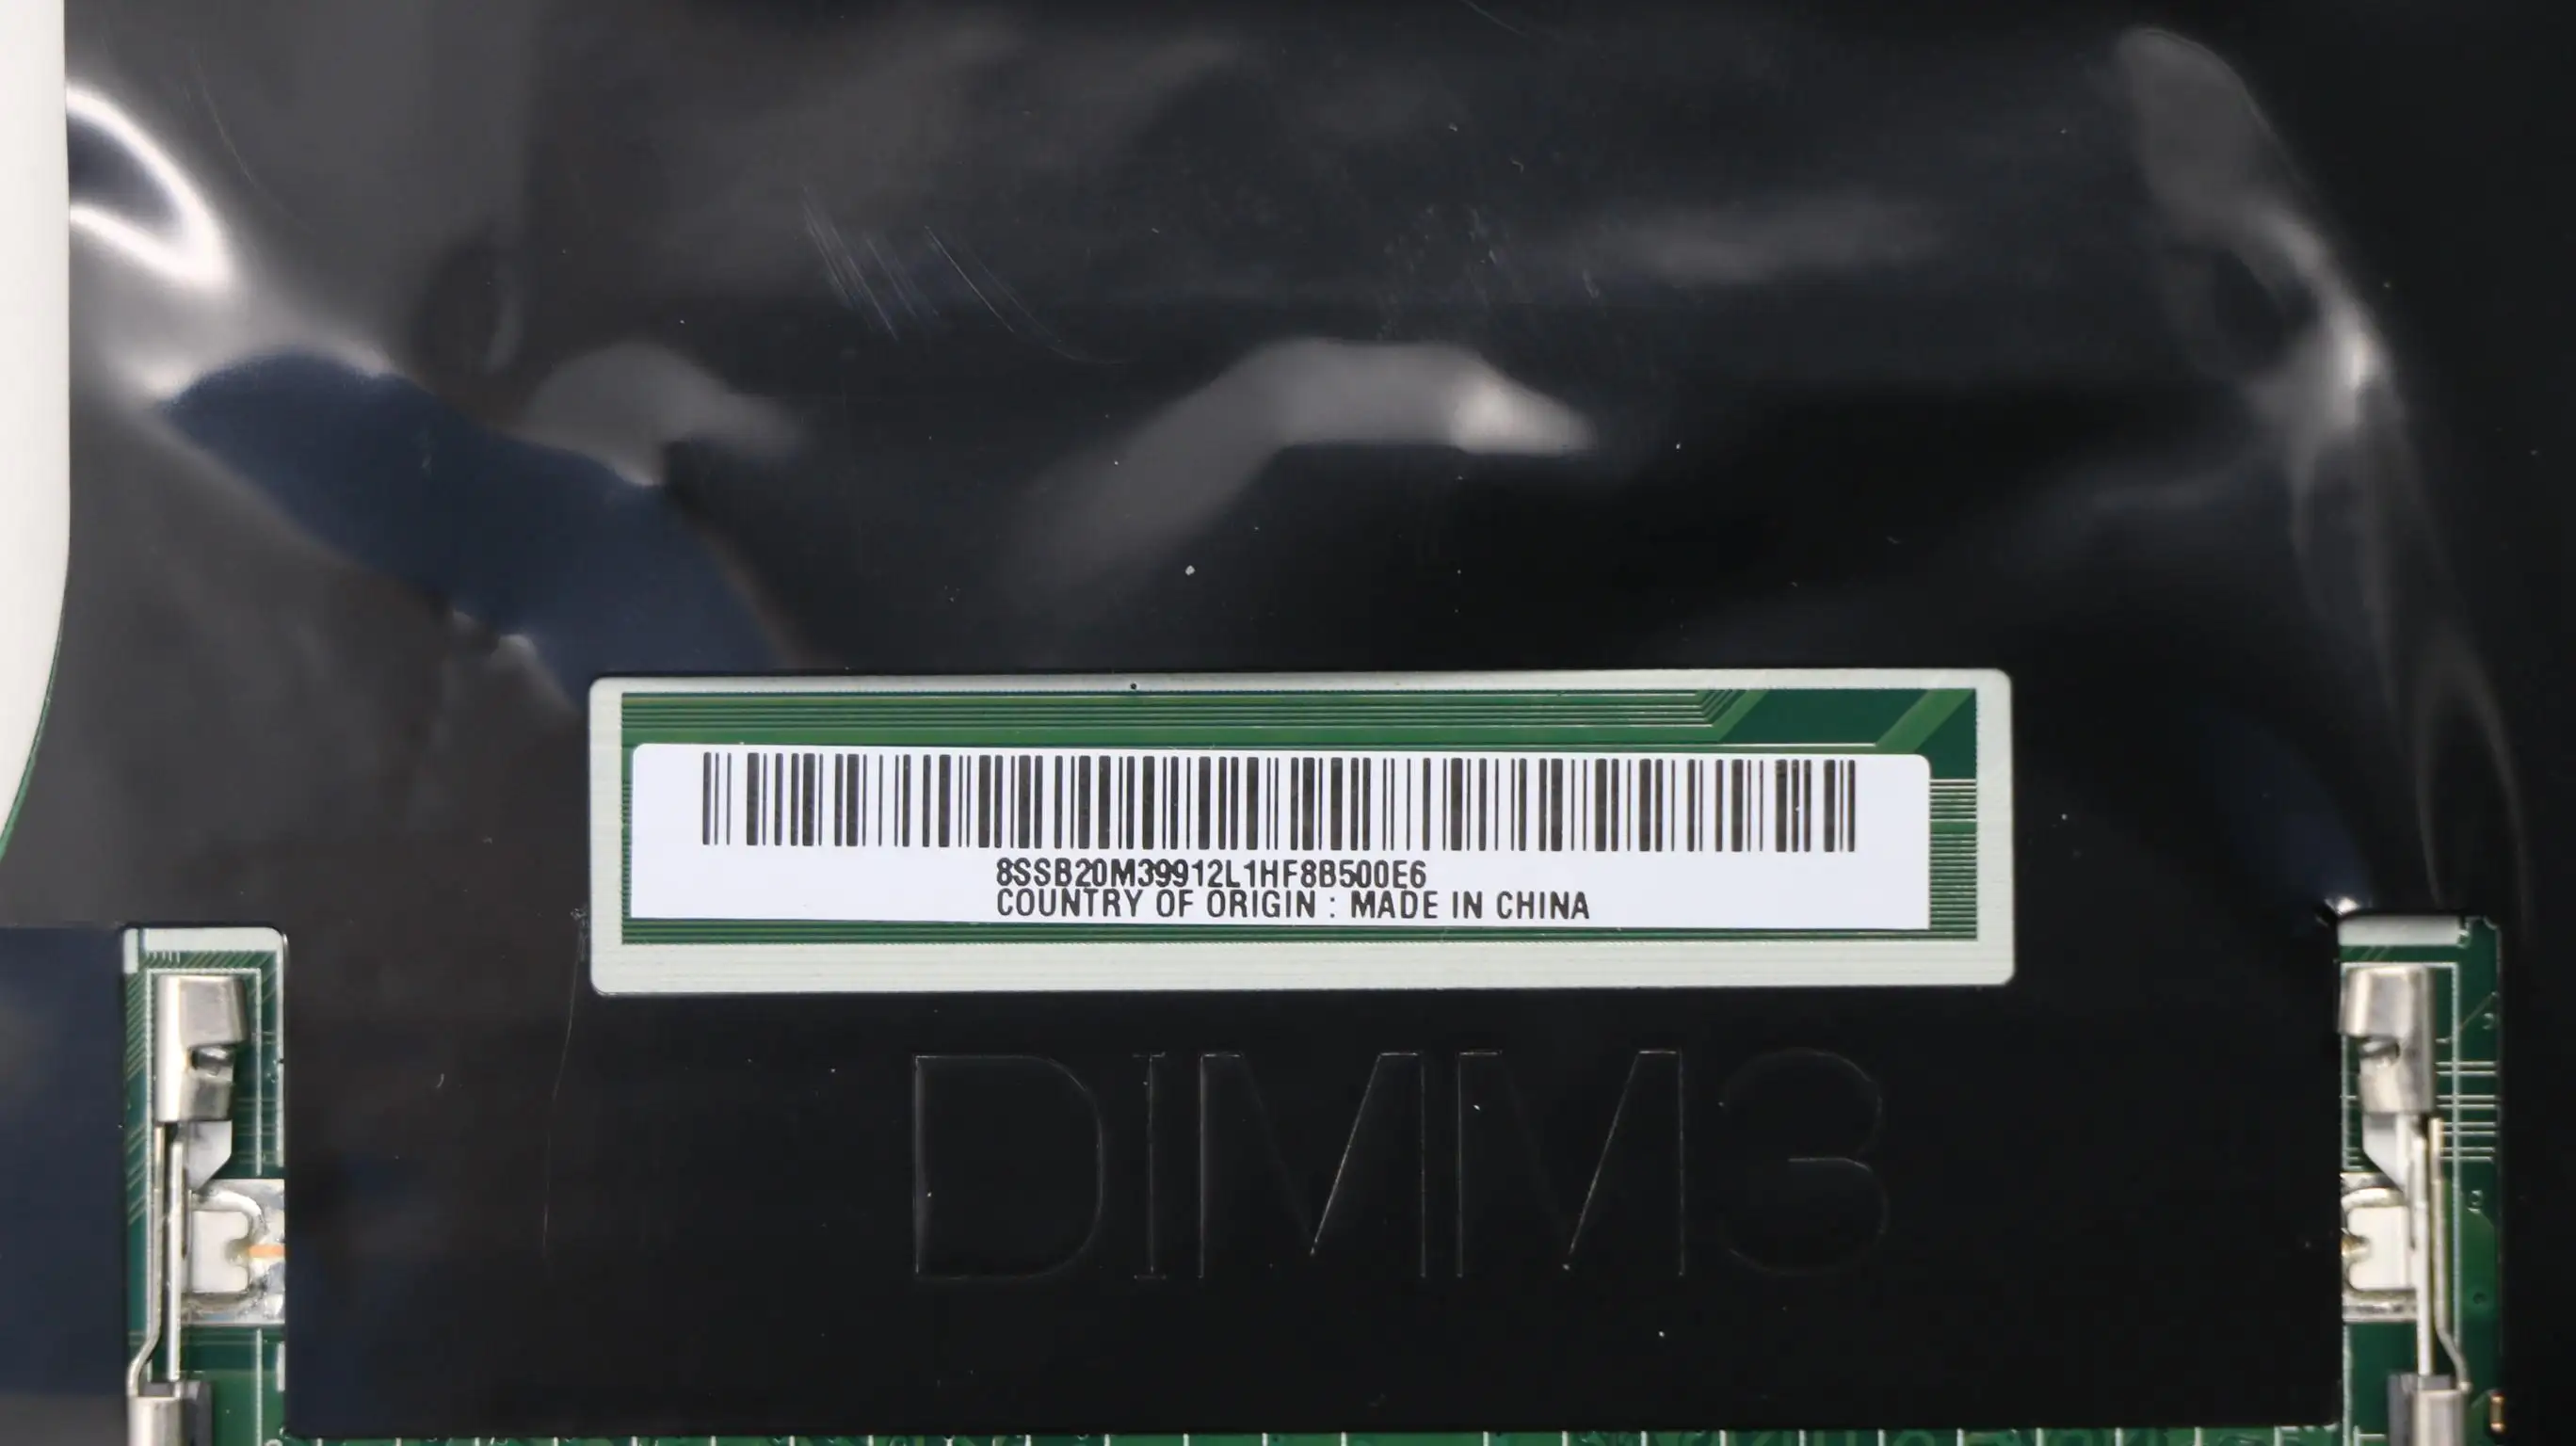 SN NM-B041 FRU 01AV359 CPU I77700HQ I77820HQ E31505MモデルマルチGPU M1200M M2200M 4G DP510P51ラップトップThinkPadマザーボード